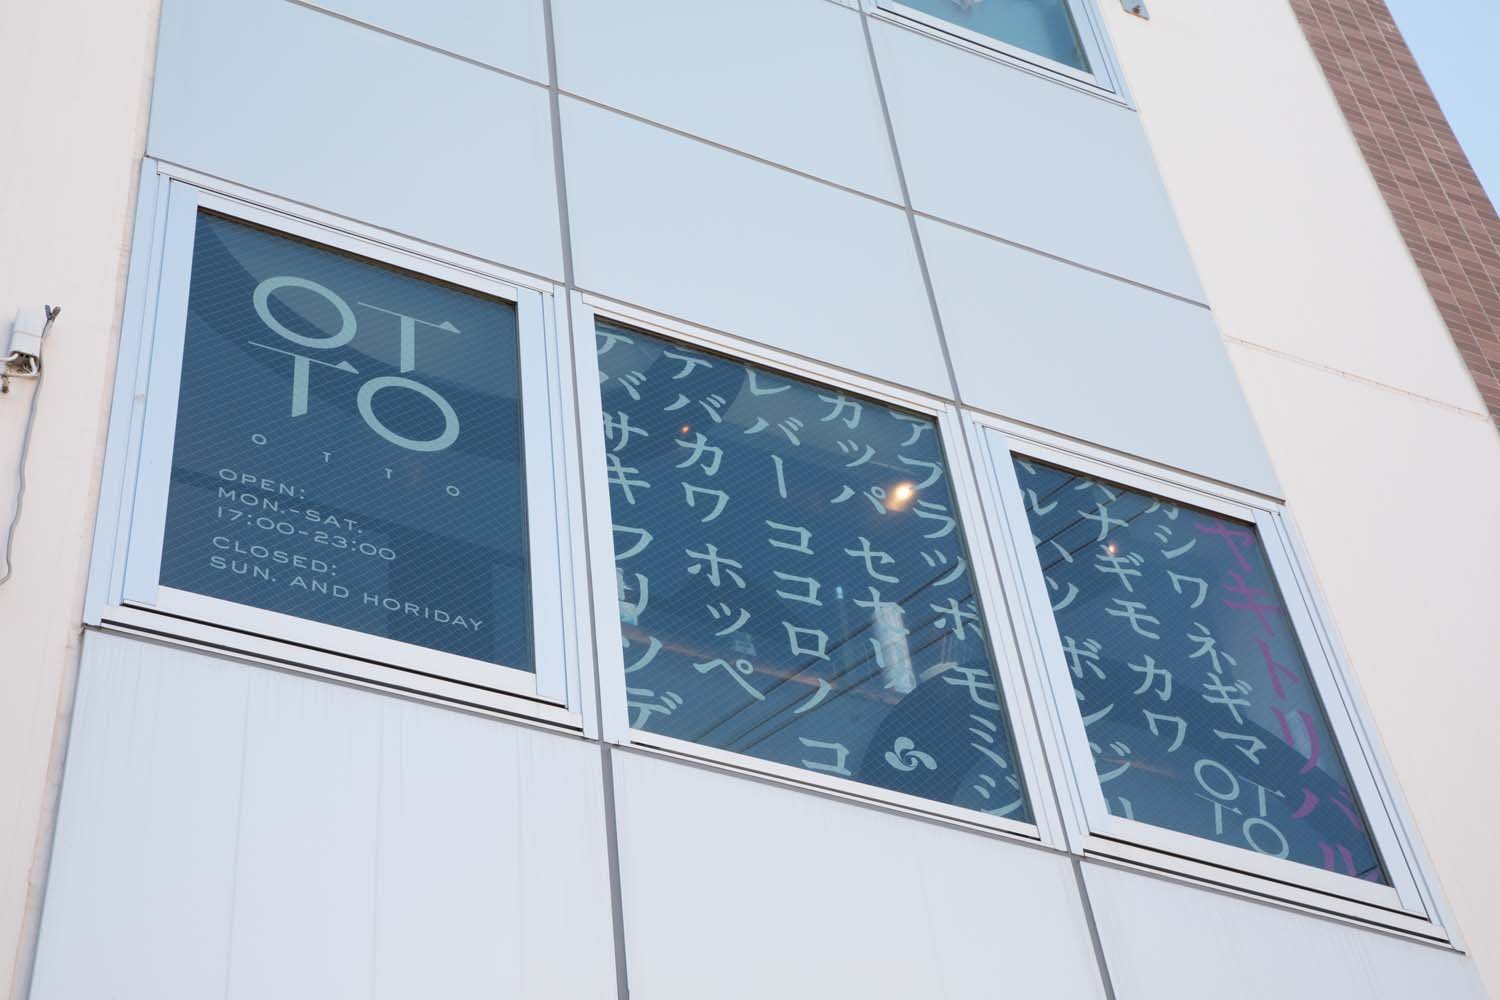 京成線沿いのマンション2階にある。窓に書かれた焼き鳥メニューが目印。